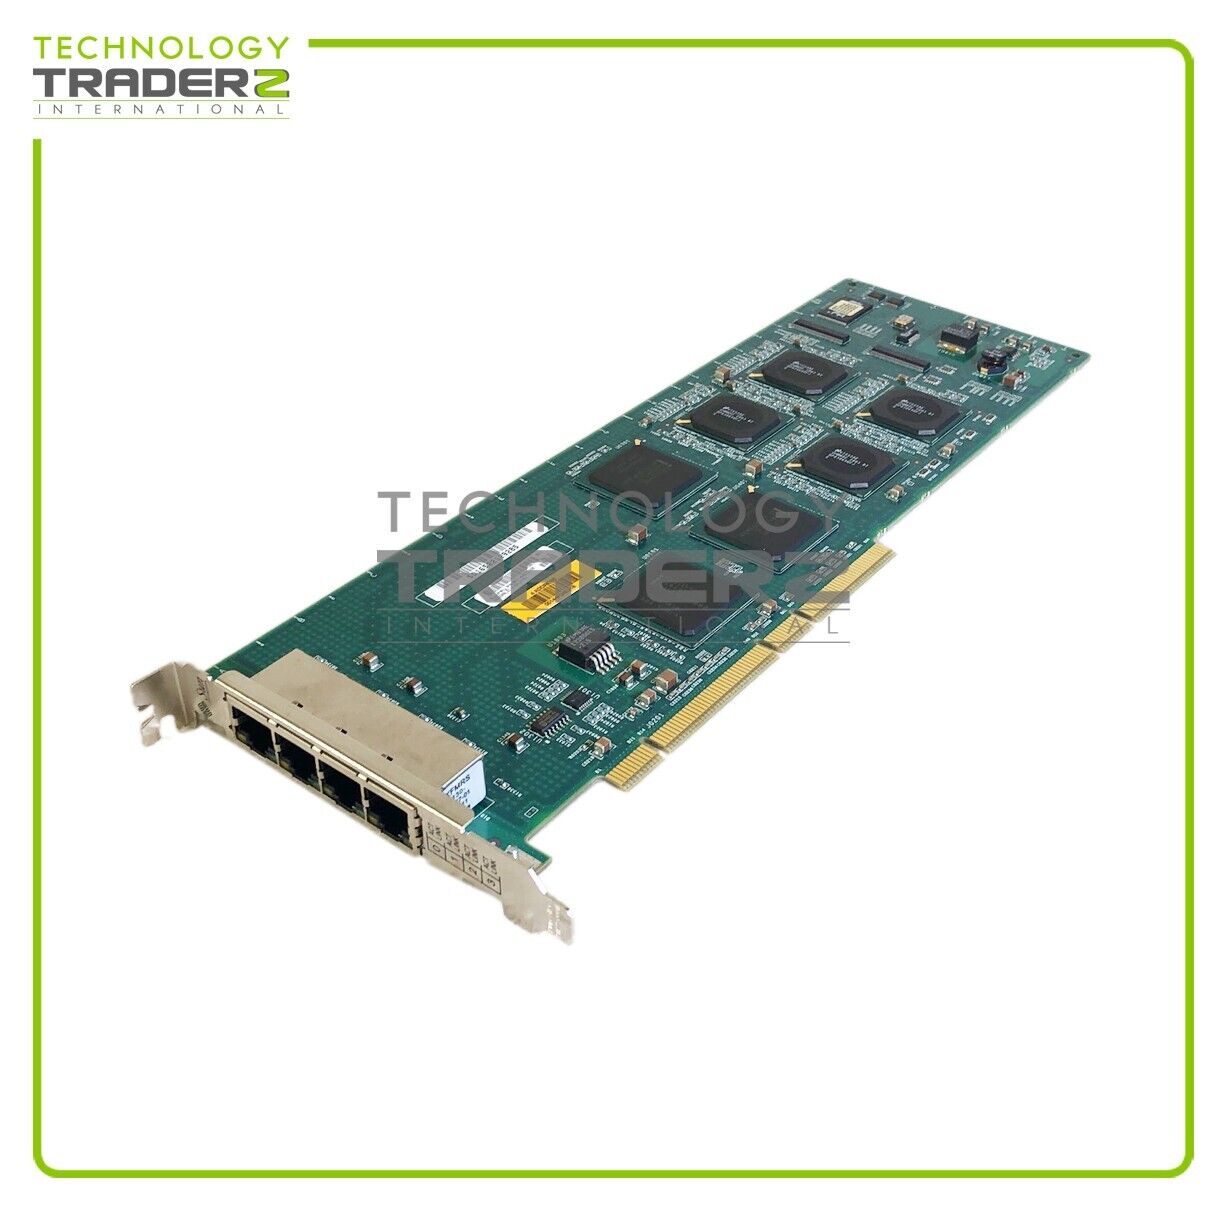 501-6522-08 Sun Quad Port PCI Gigabit Ethernet Card QGEPCI W/ Bracket